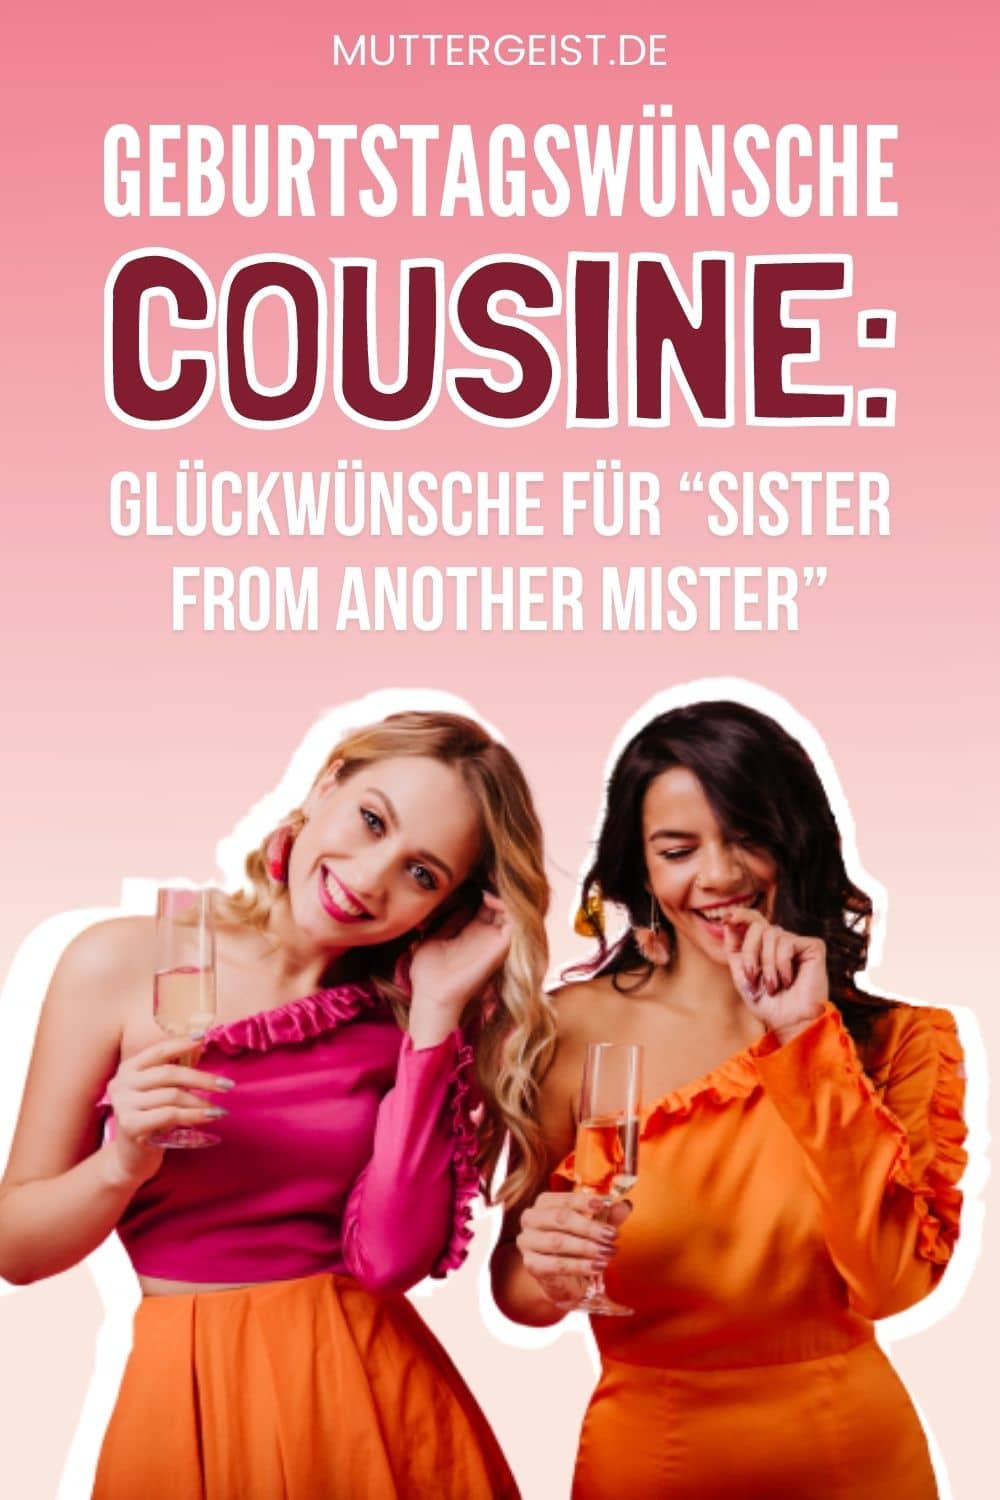 Geburtstagswünsche Cousine – Glückwünsche Für “Sister From Another Mister” Pinterest